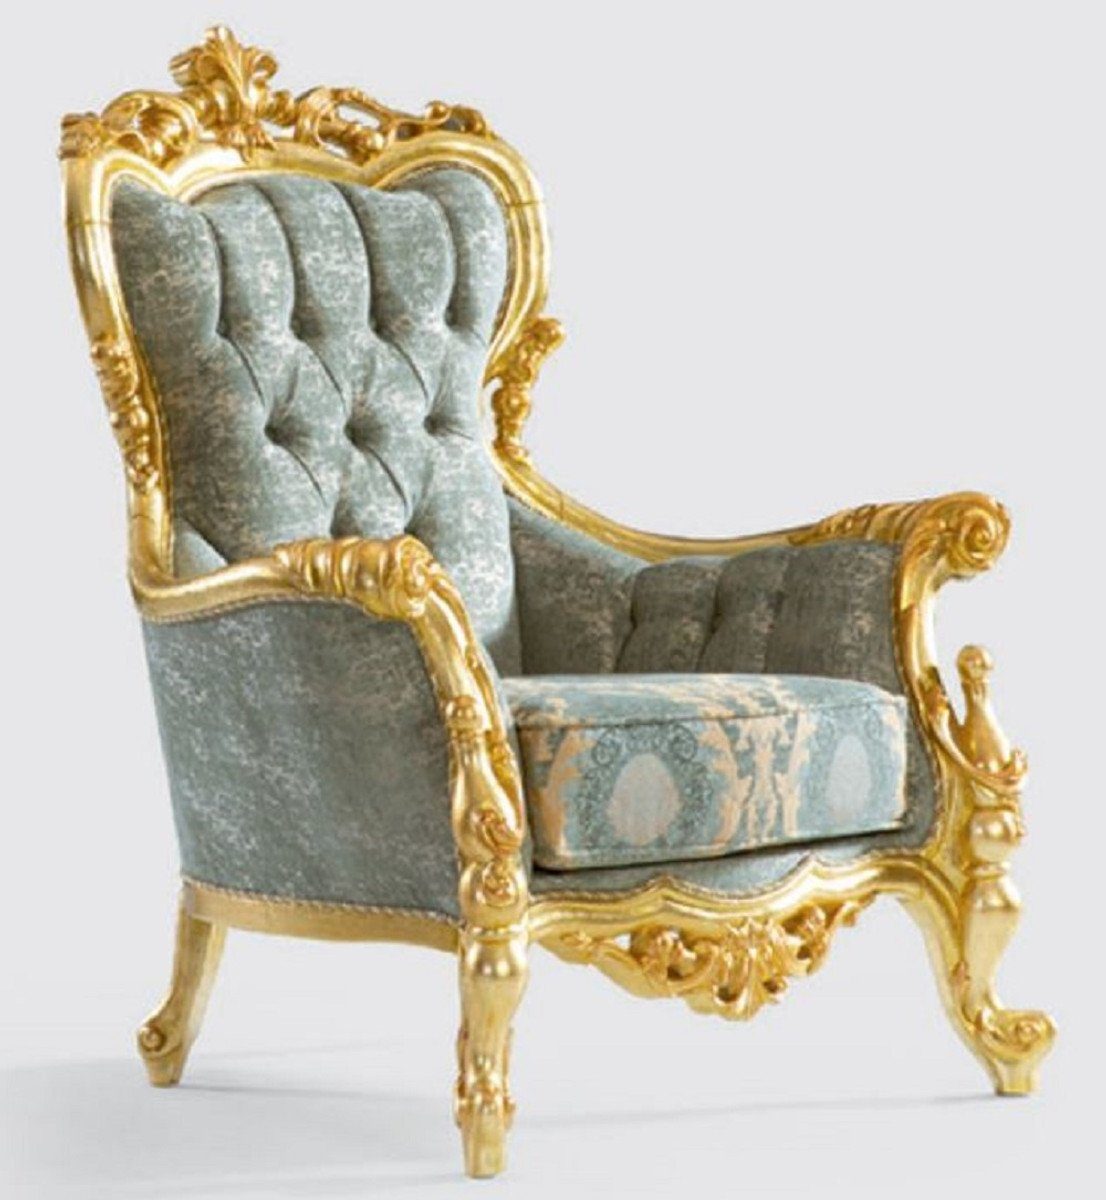 Casa Padrino Sessel Luxus Barock Sessel Grün / Gold 100 x 85 x H. 122 cm - Handgefertigter Wohnzimmer Sessel mit elegantem Muster - Barock Wohnzimmer Möbel - Edel & Prunkvoll